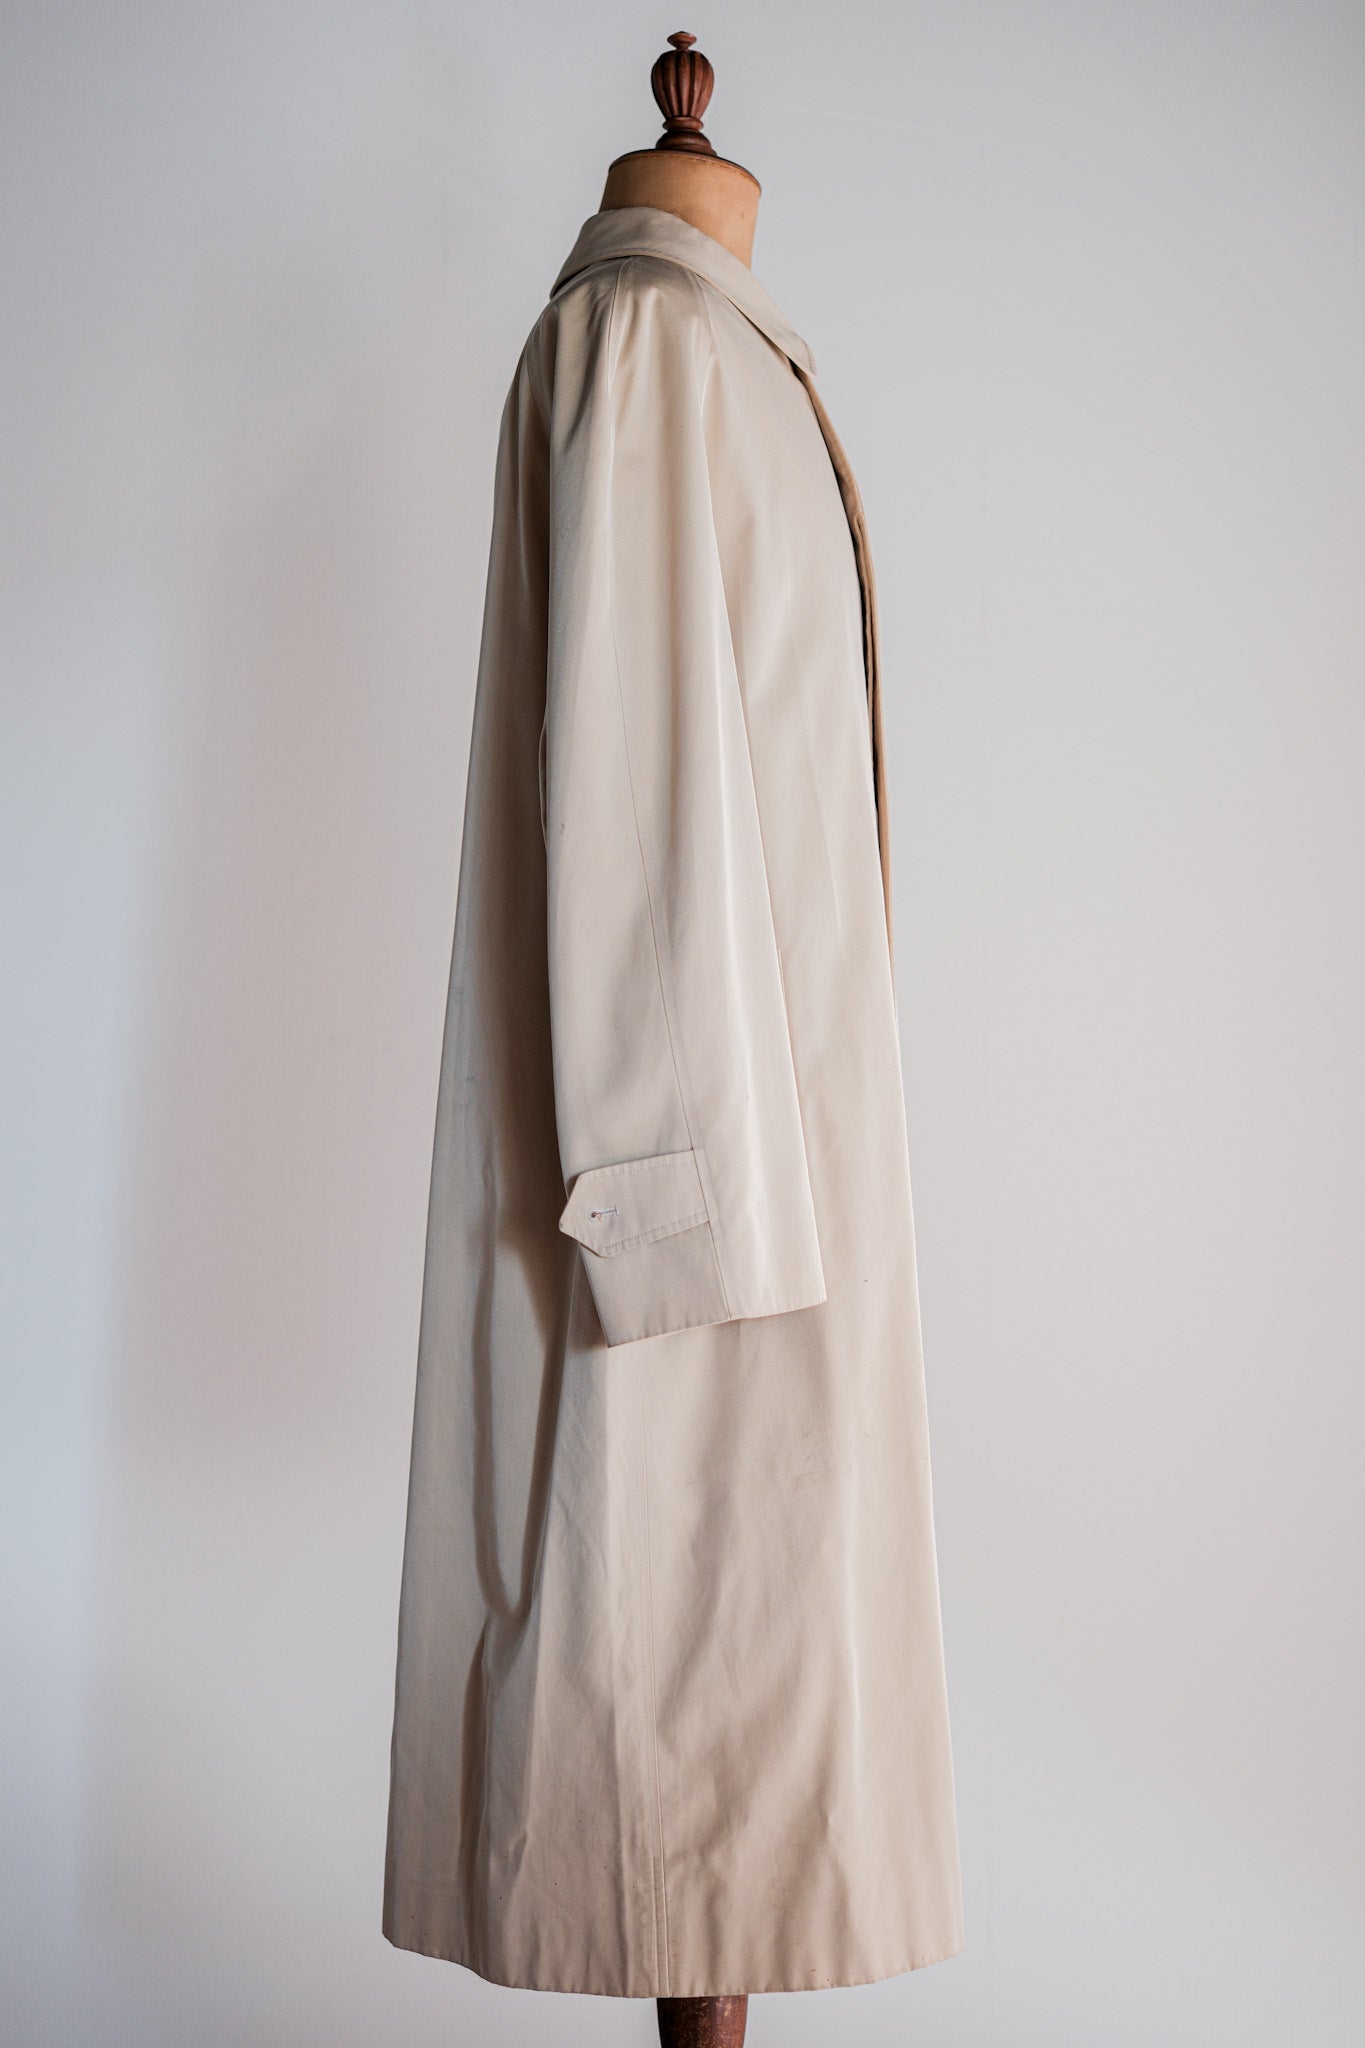 [~ 90 년대] Old Invertere Raglan Sleeve Balmacaan 코트 코트 코트 C100 크기 .42R "De Paz 별도의 음표"